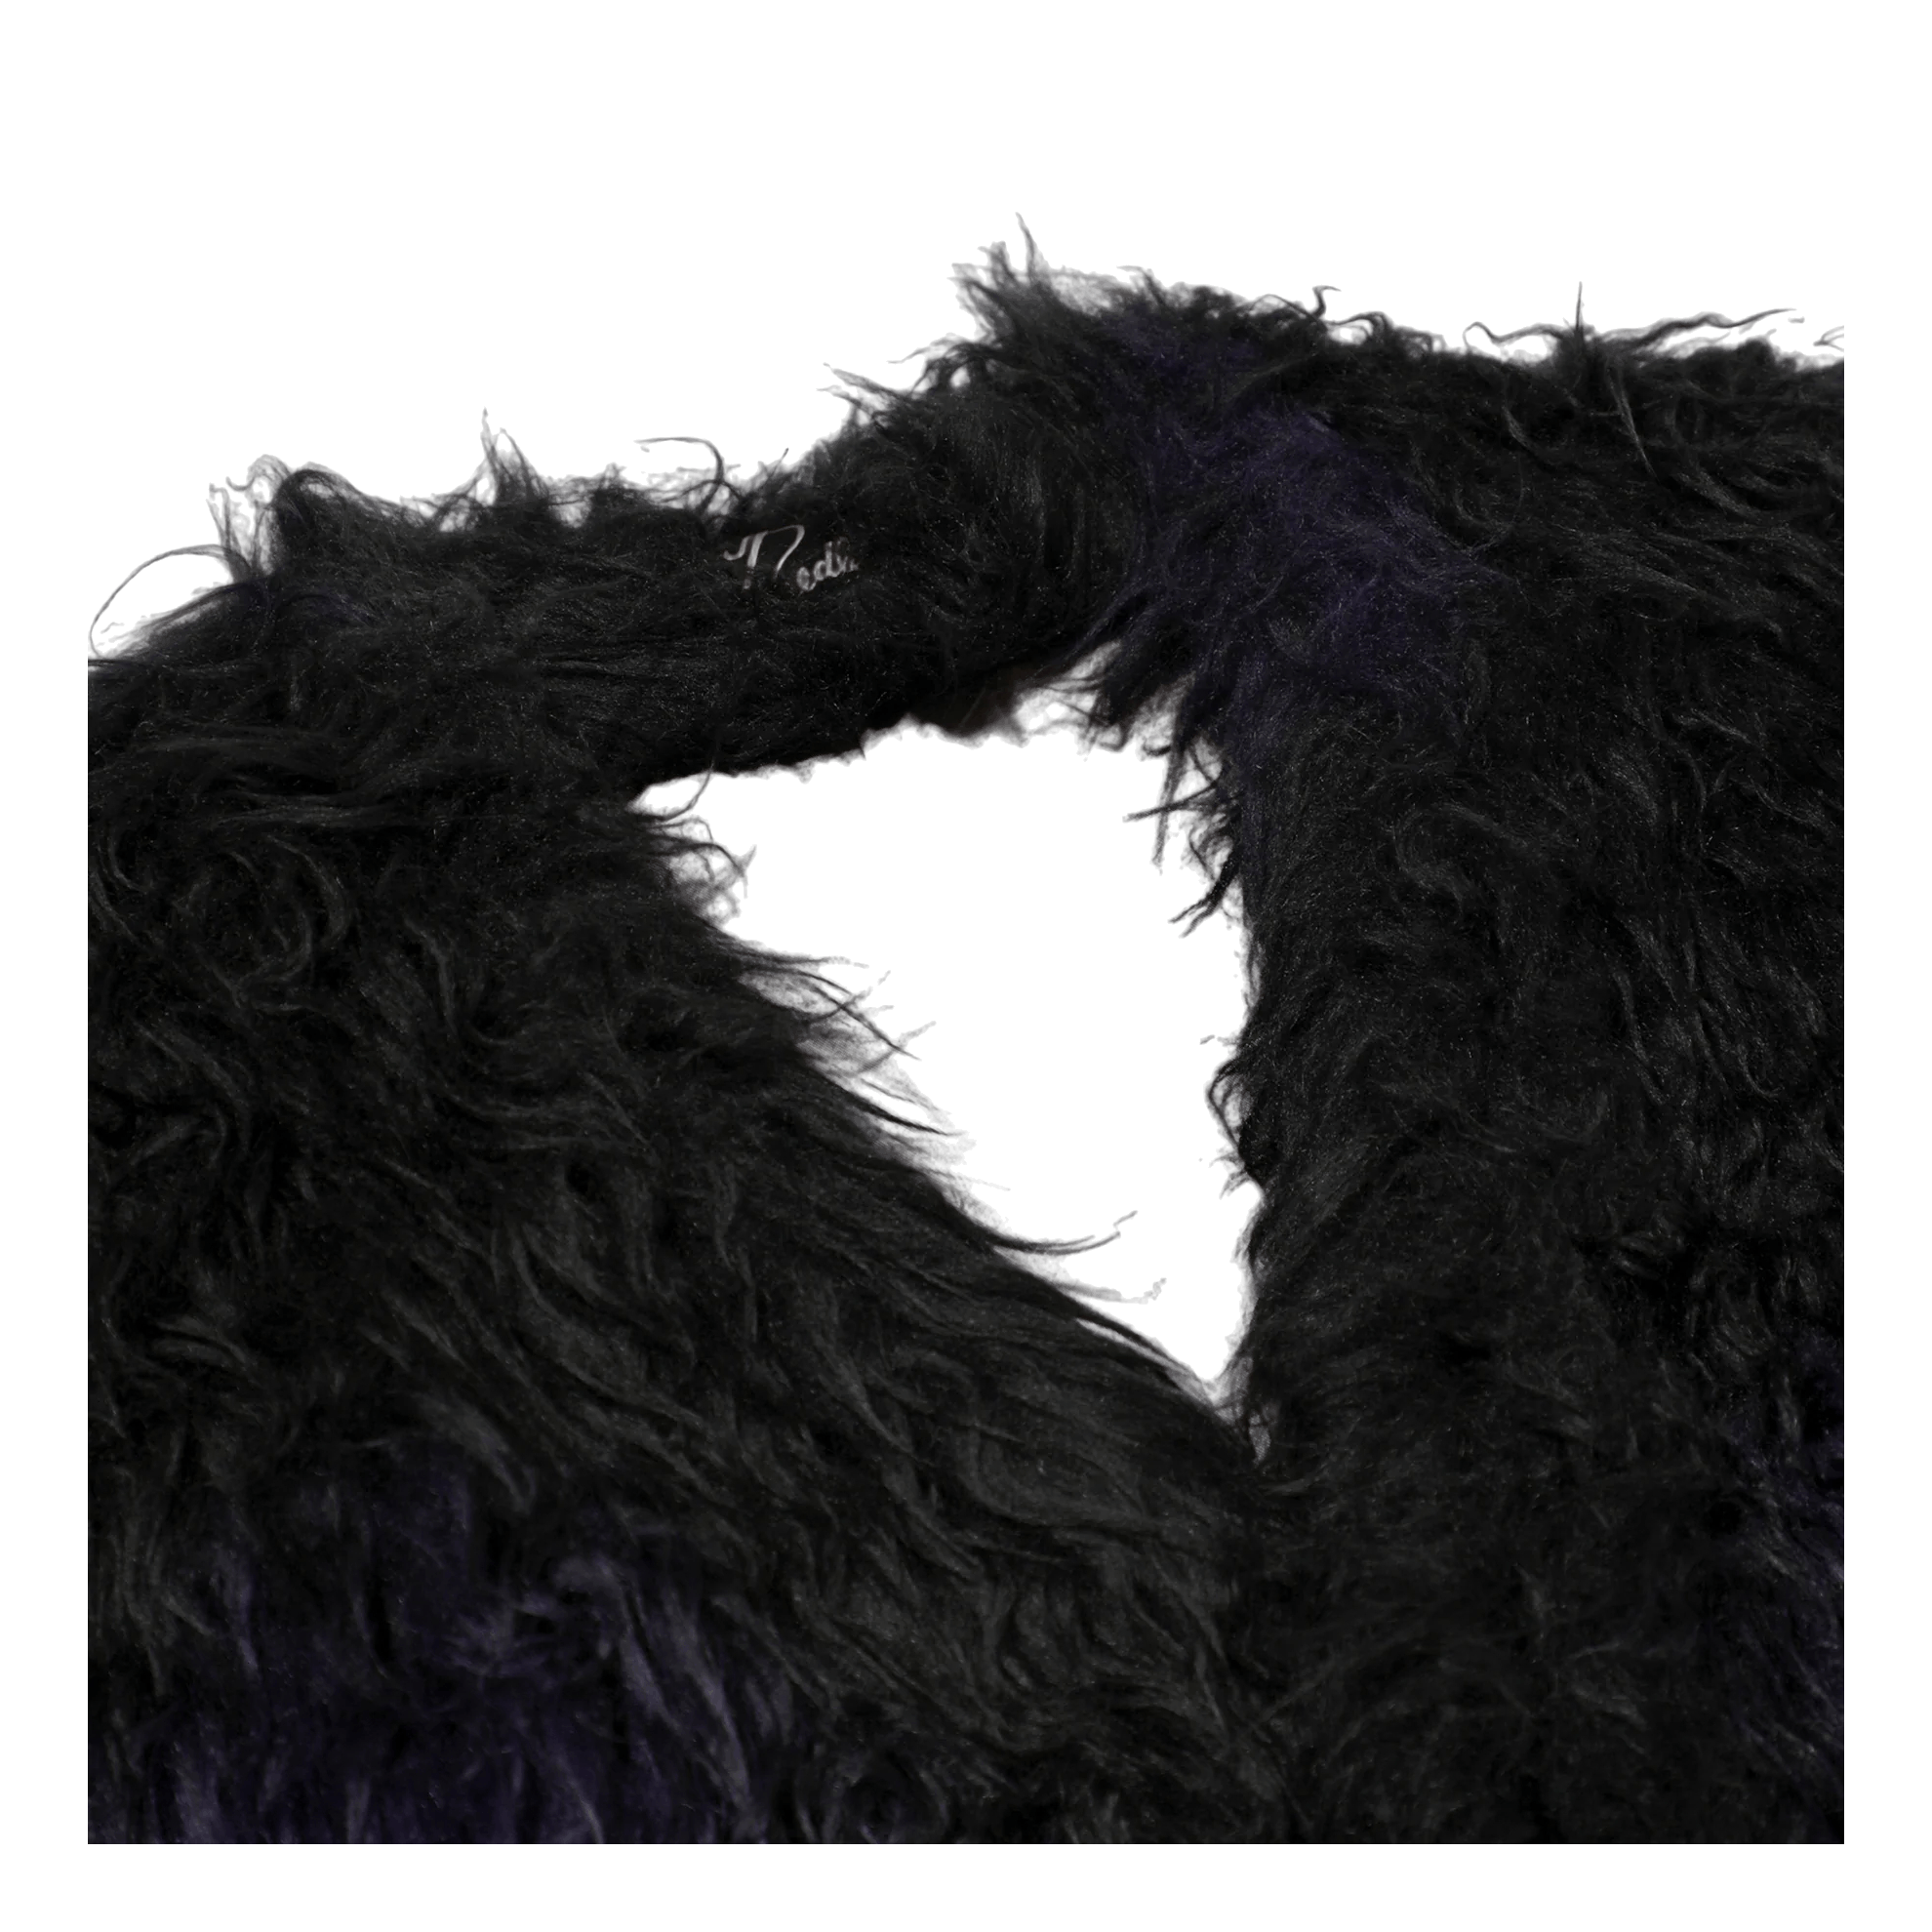 Gown Coat - Acrylic Fur / Blur Black